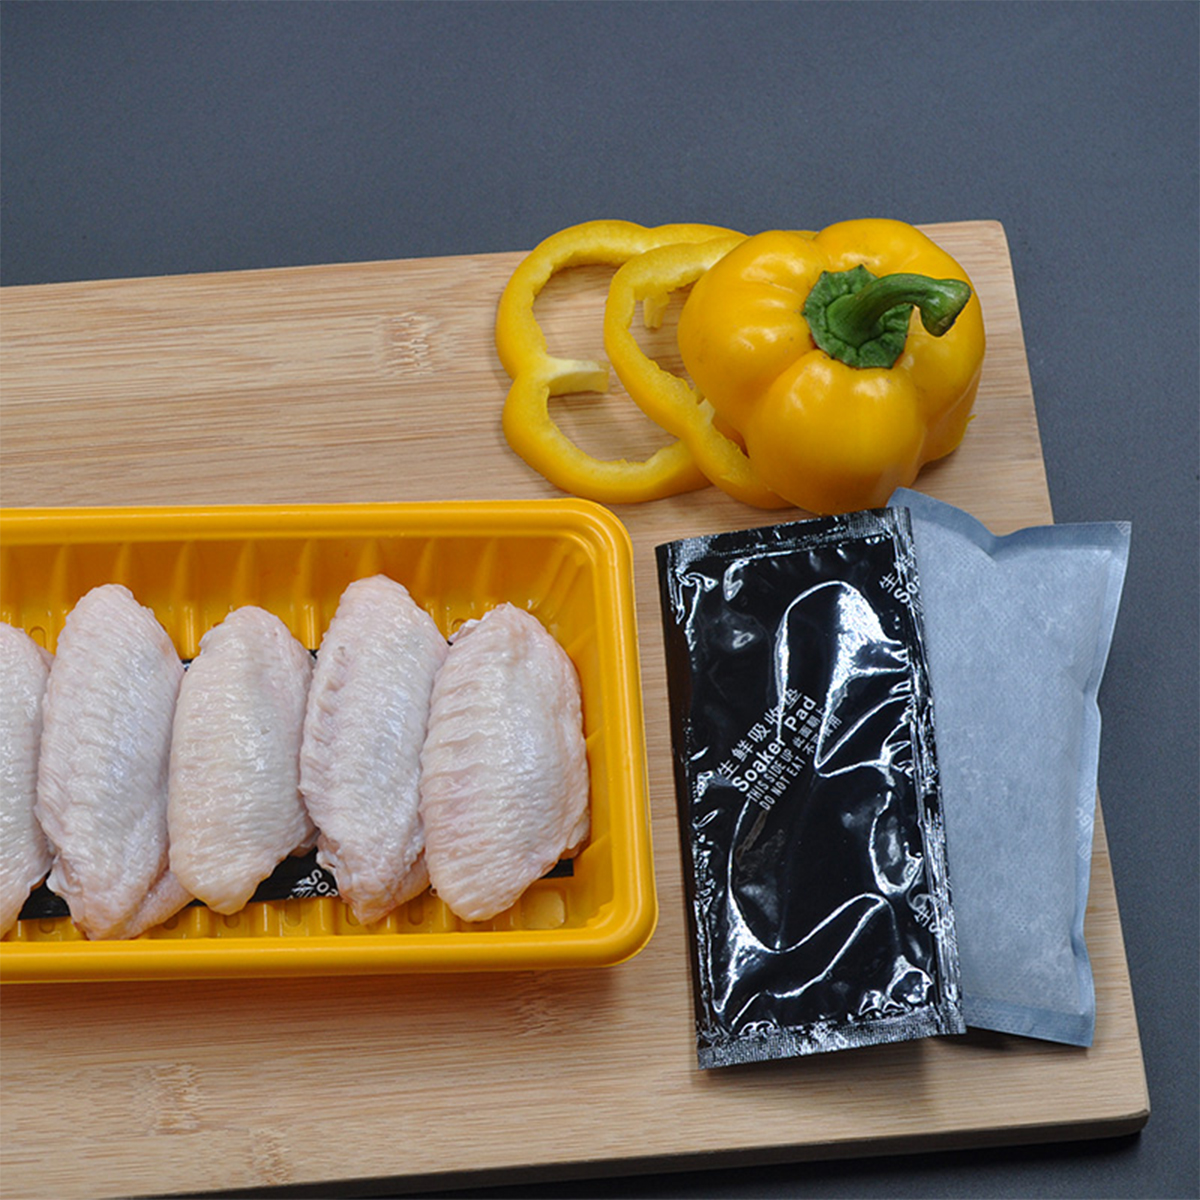 Sang de poulet fruits de mer fruits volaille viande et poisson tampon absorbant pour plateaux jetables